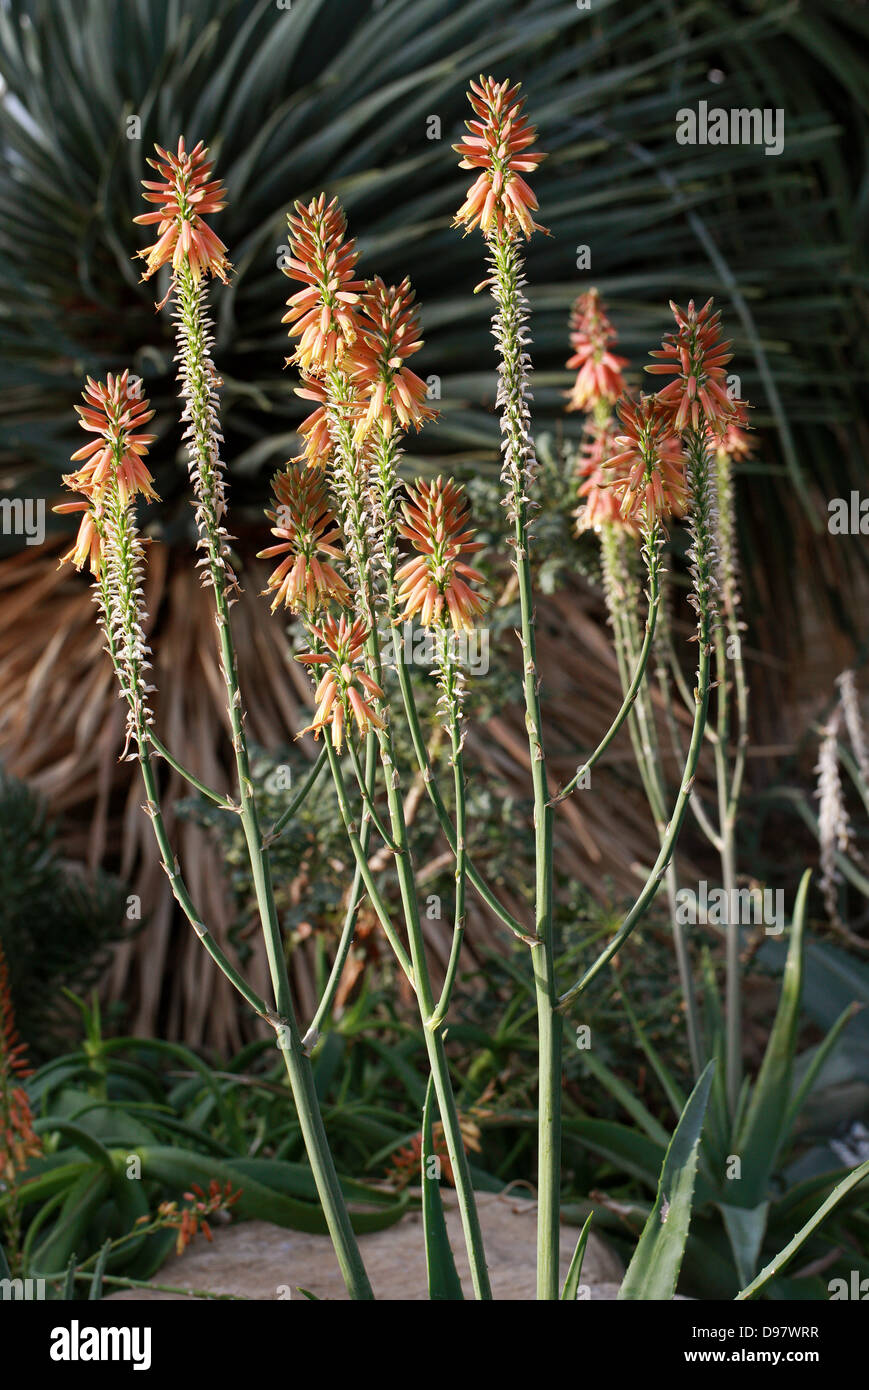 Aloe yemenica, Asphodelaceae (Previously Aloaceae), Arabian Peninsular Stock Photo